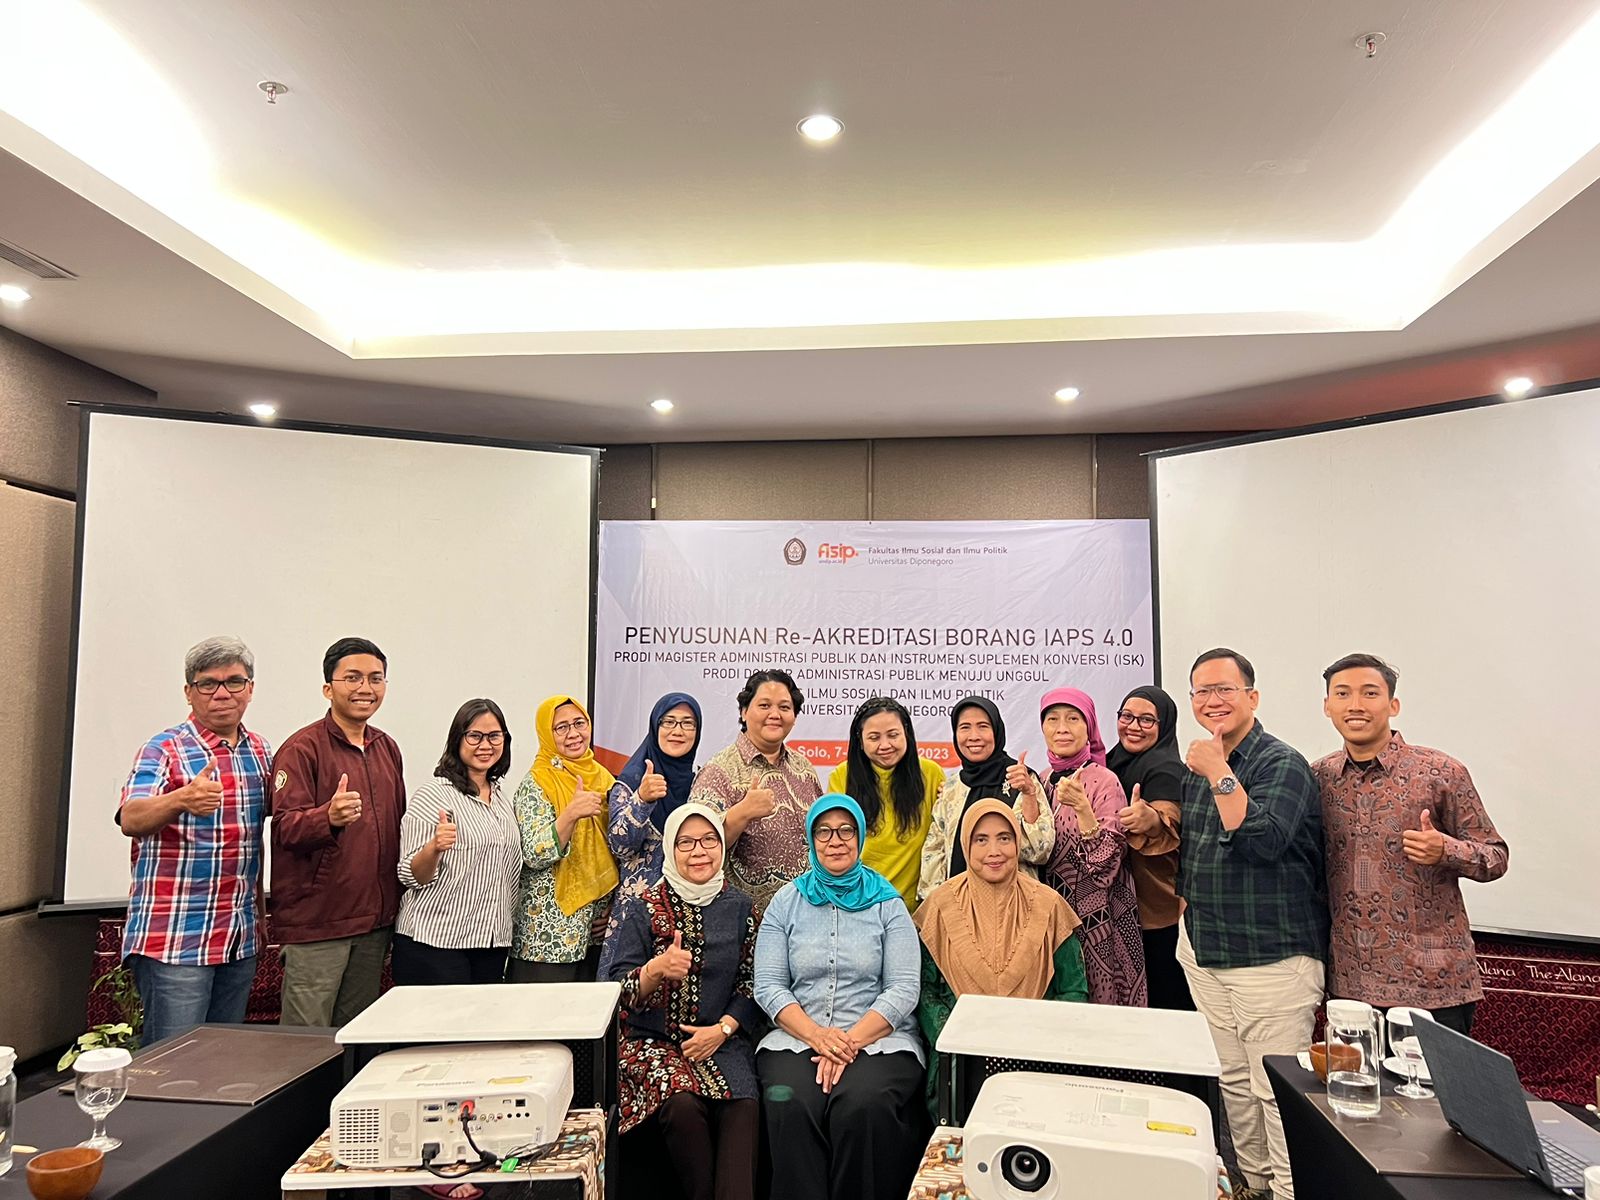 Workshop Penyusunan Re-Akreditasi Borang IAPS 4.0 Departemen Administrasi Publik